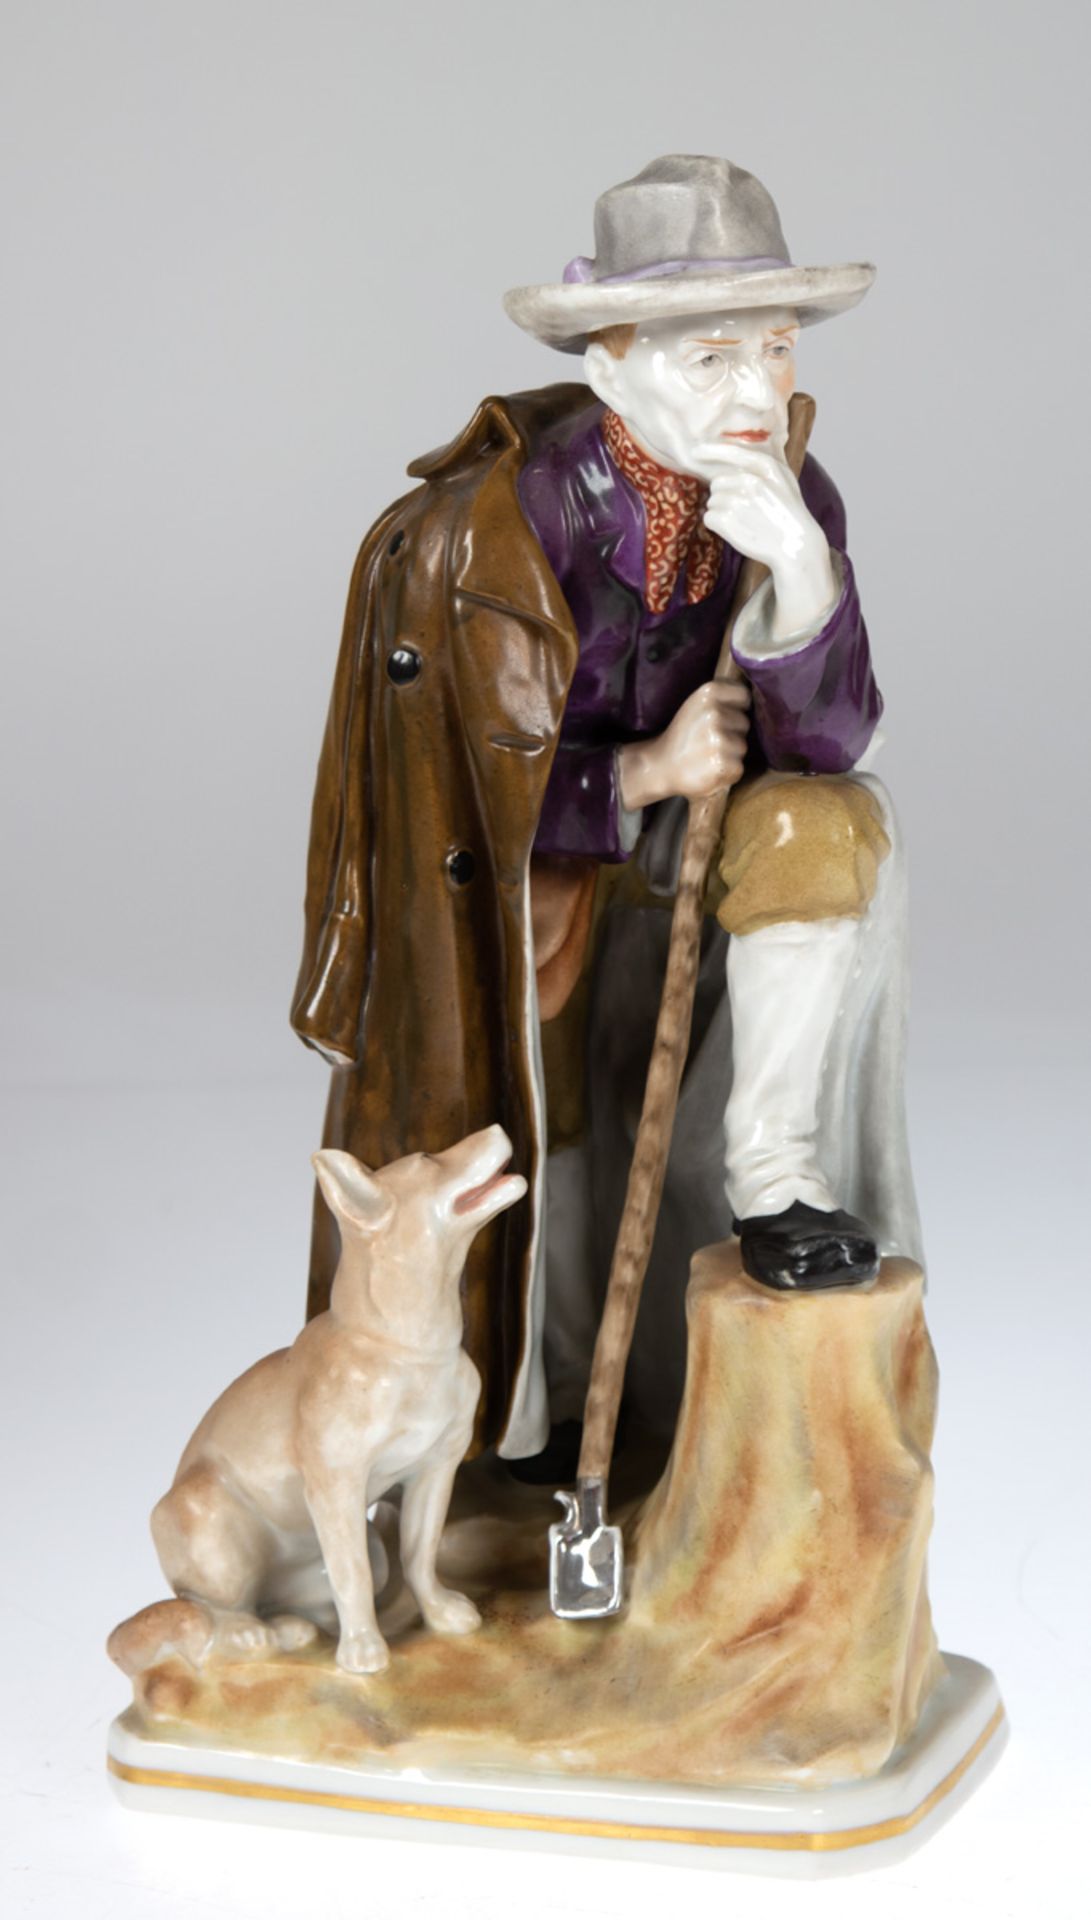 Porzellanfigur "Schäfer mit seinem Hund", wohl Thüringen, auf Sockel, polychrome bemalt,ungemarkt,